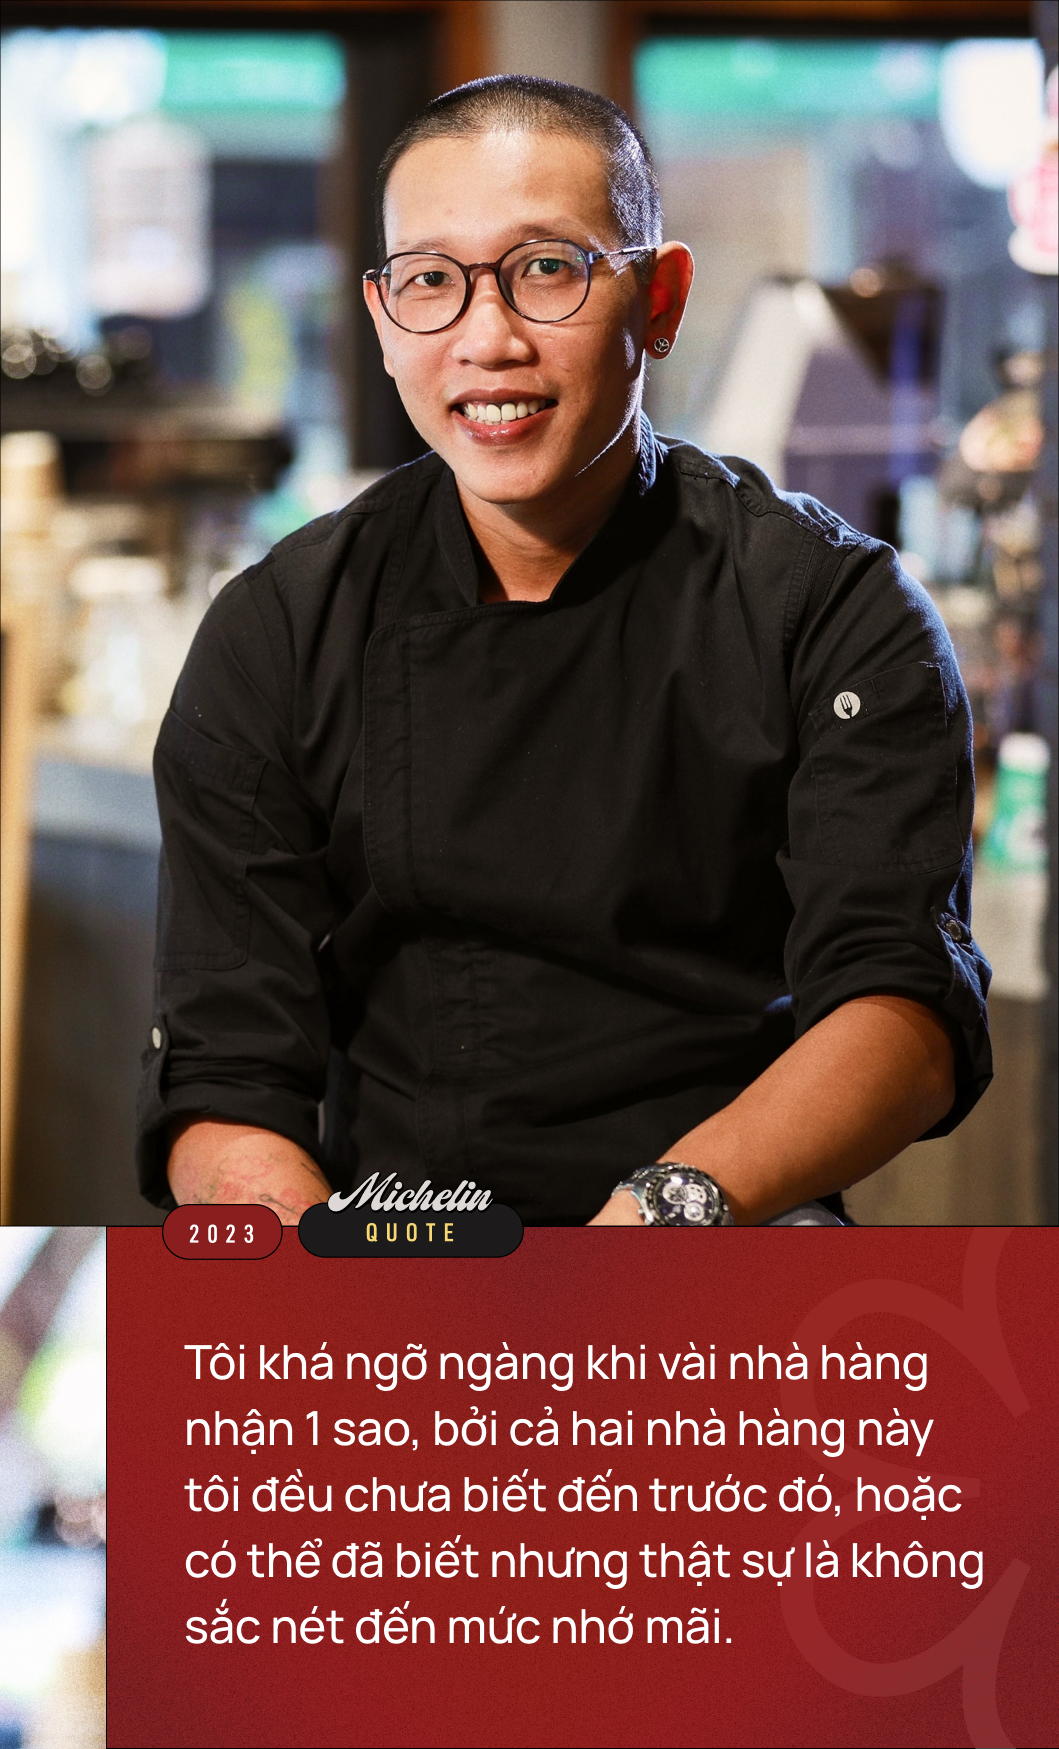 Michelin Guide trong mắt các chuyên gia: “Đối với người khó tính như mình thì bảng danh sách này chưa đủ Việt Nam! ” - Ảnh 3.